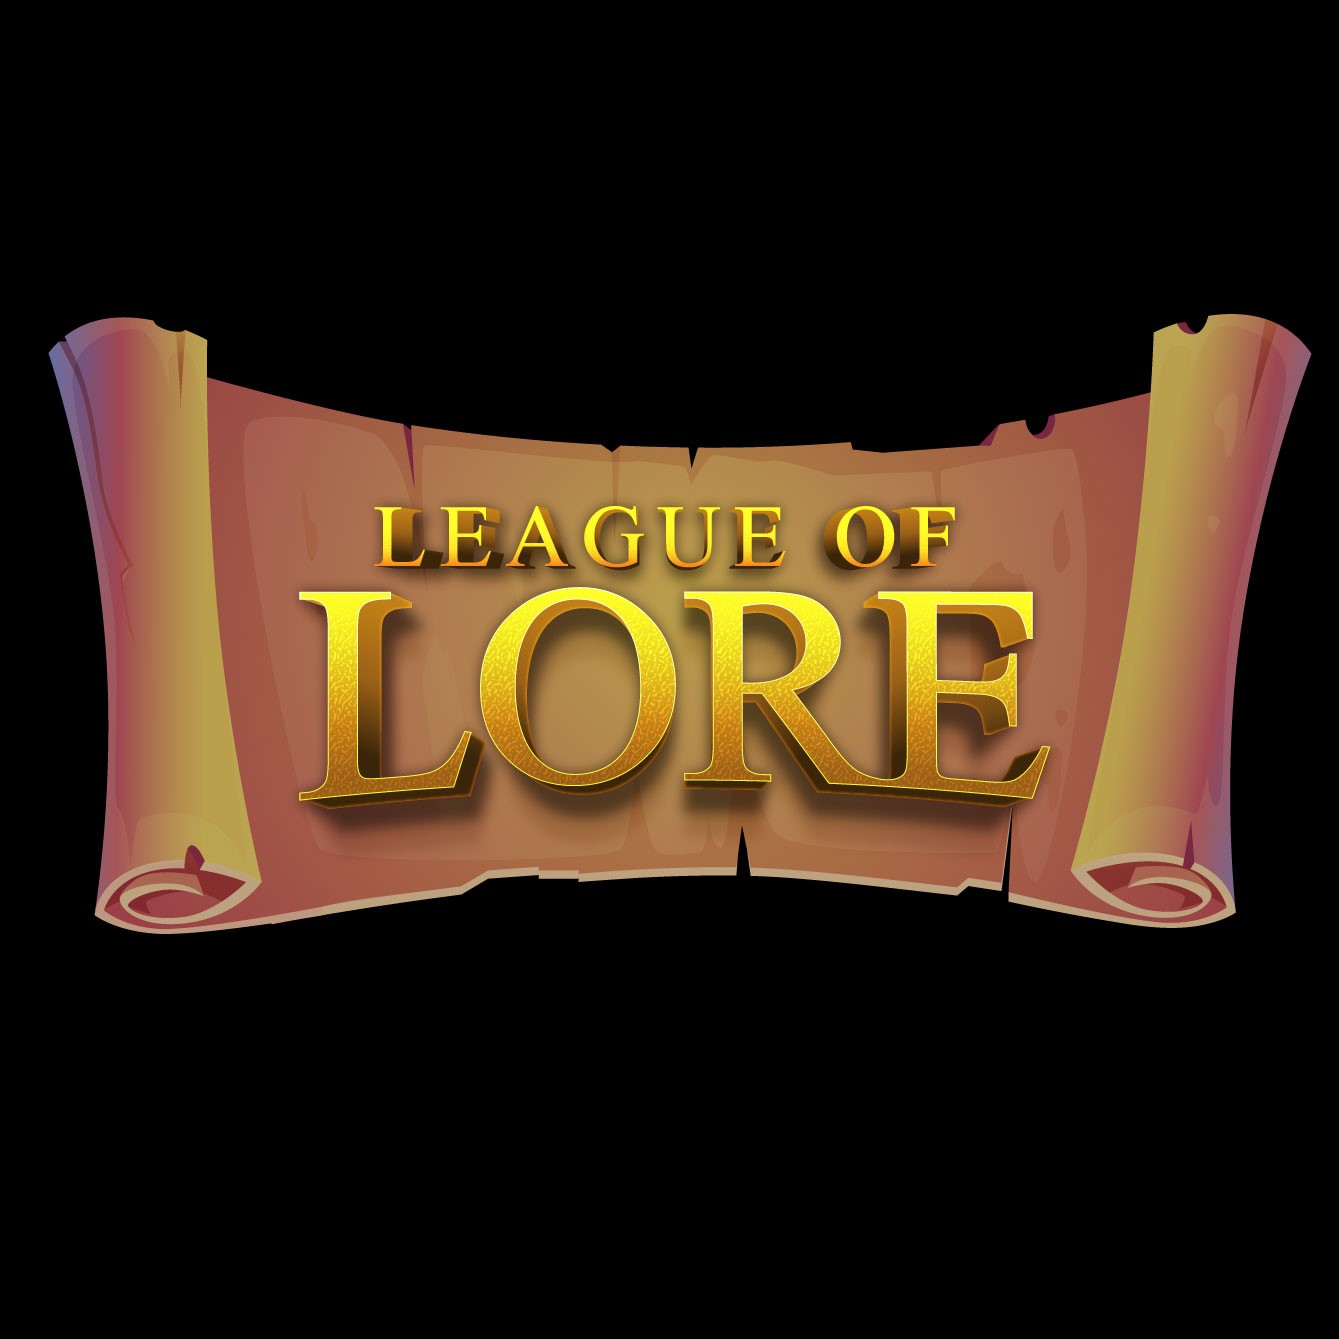 Lore - League of Legends